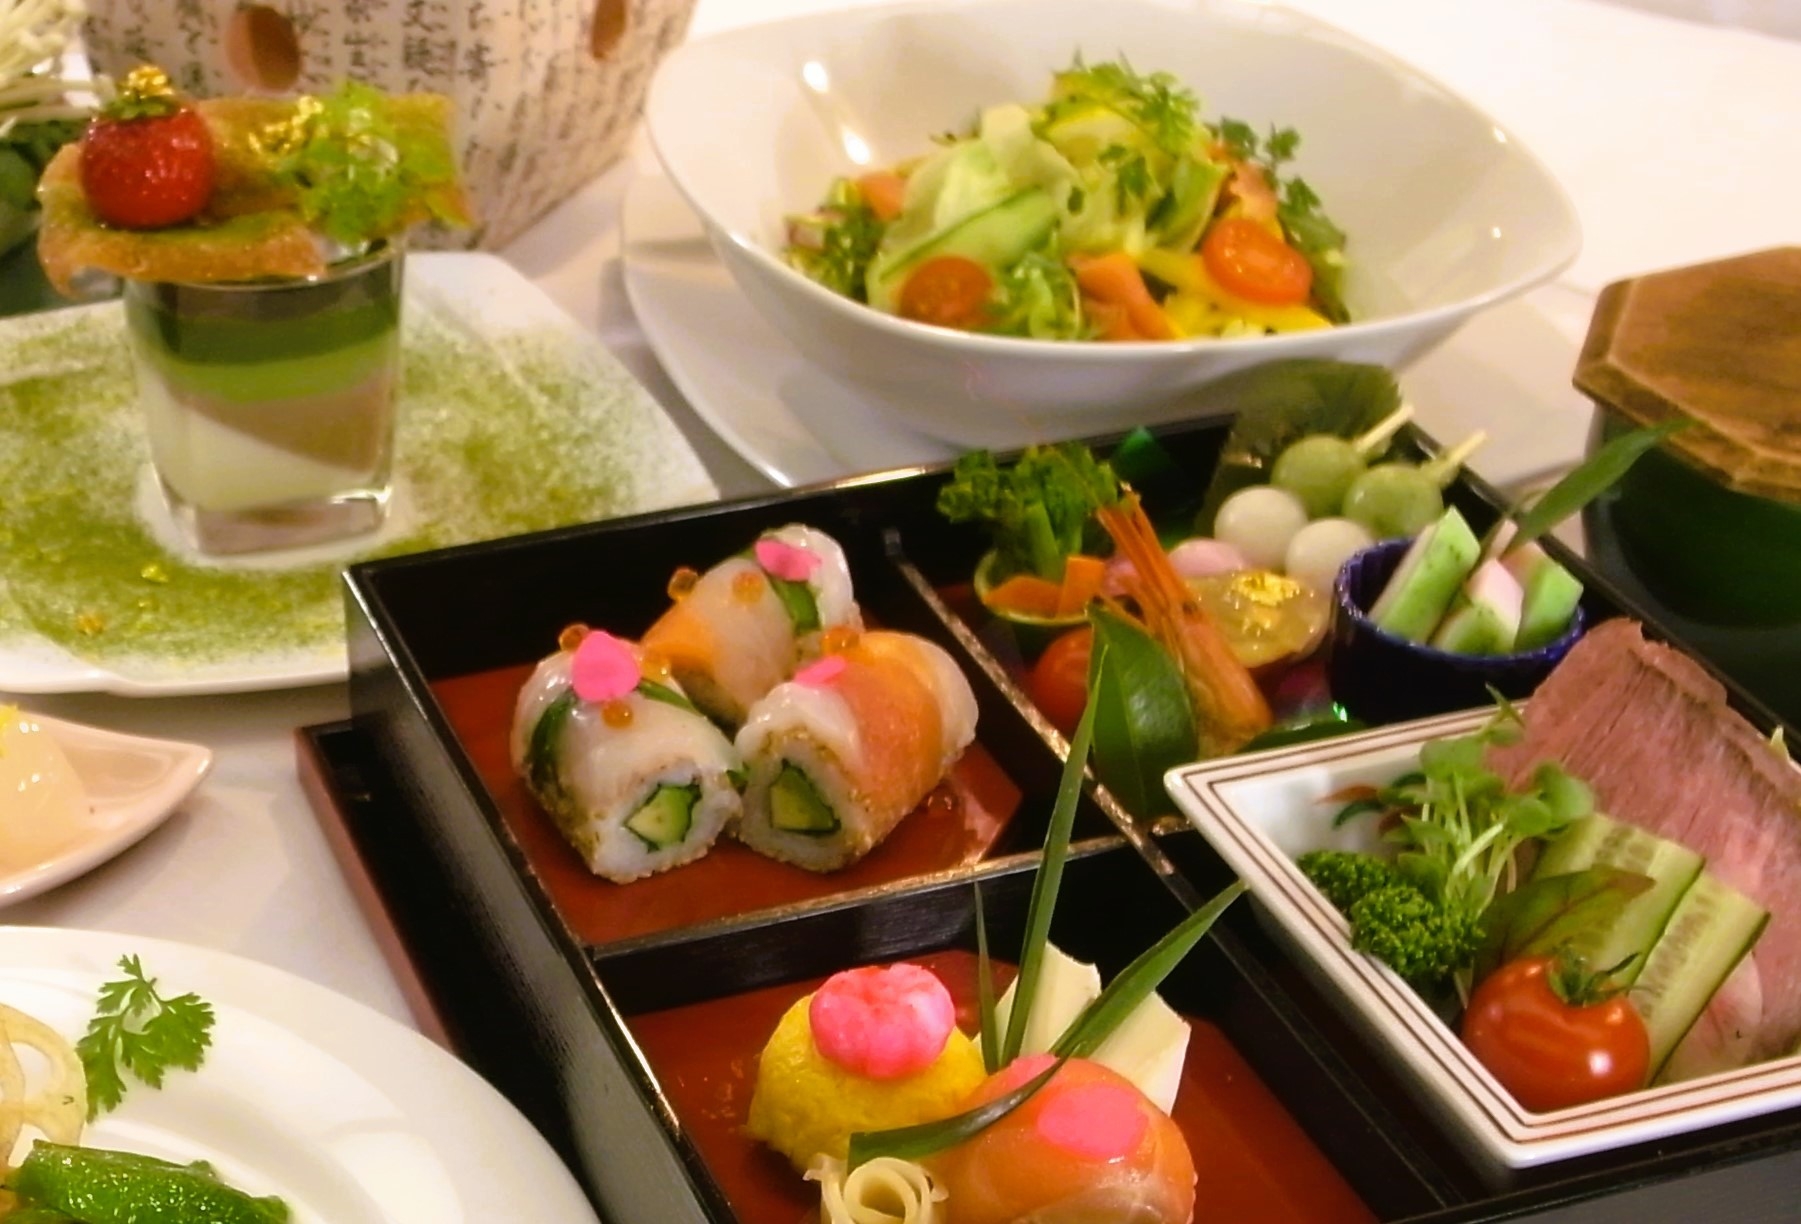 【金沢美食懐石】 彩り美しいてまり寿司など重箱につめて♪旬の味覚を味わう繊細で美しい懐石